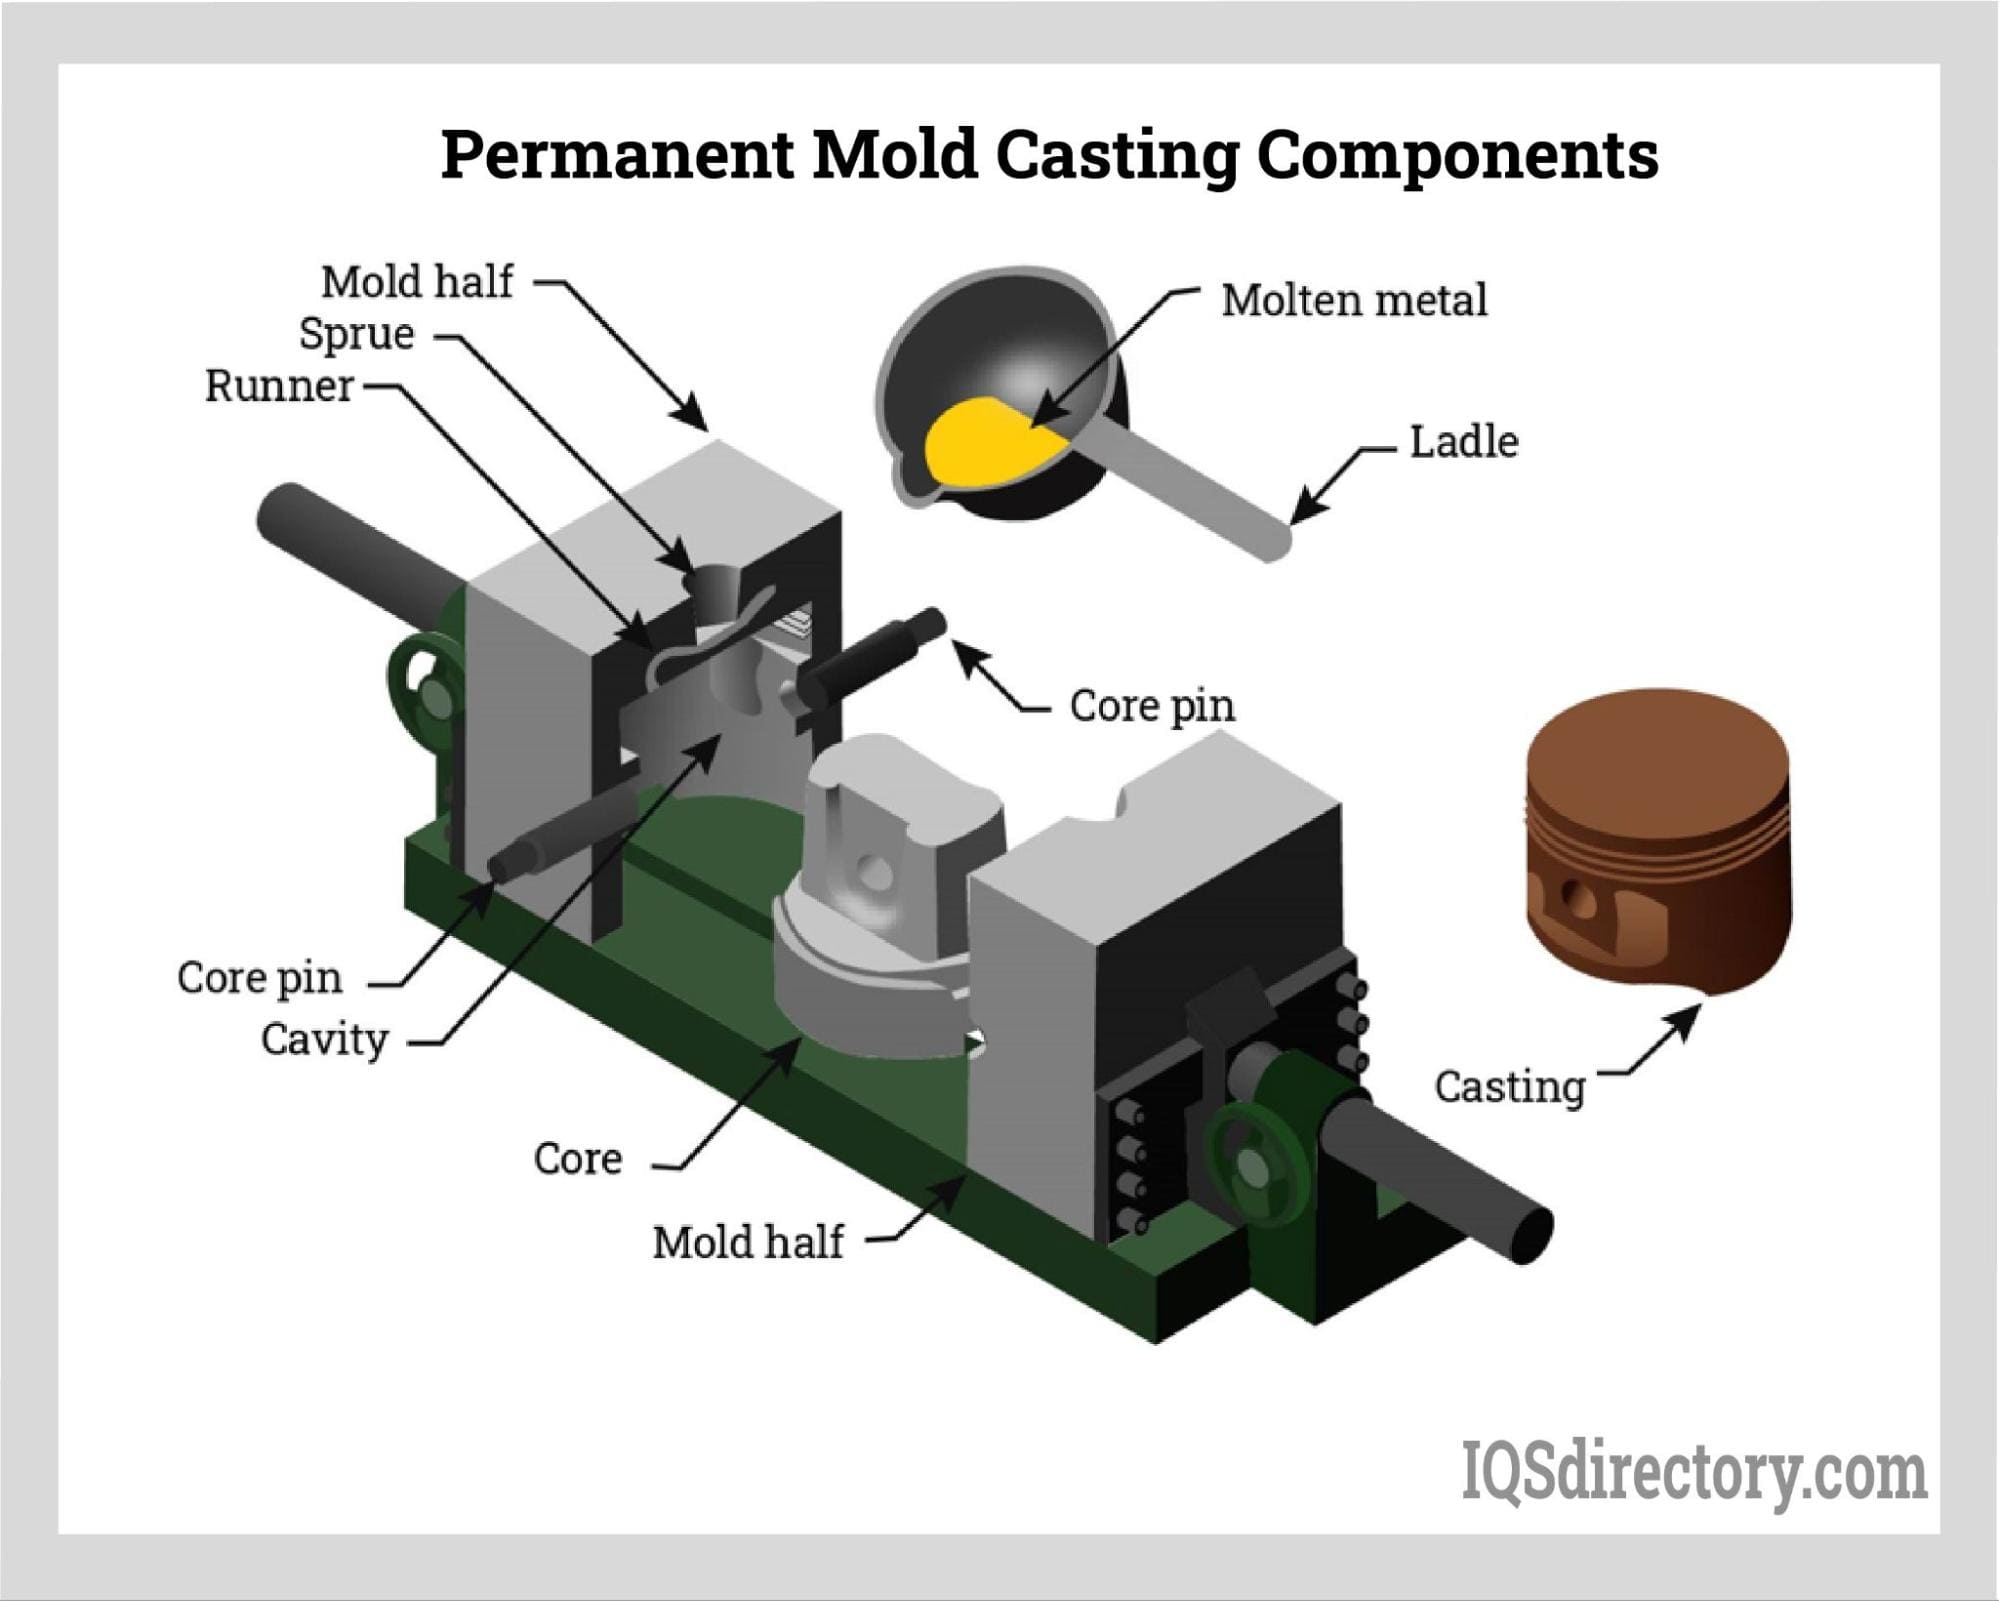 Permanent Mold Casting Components